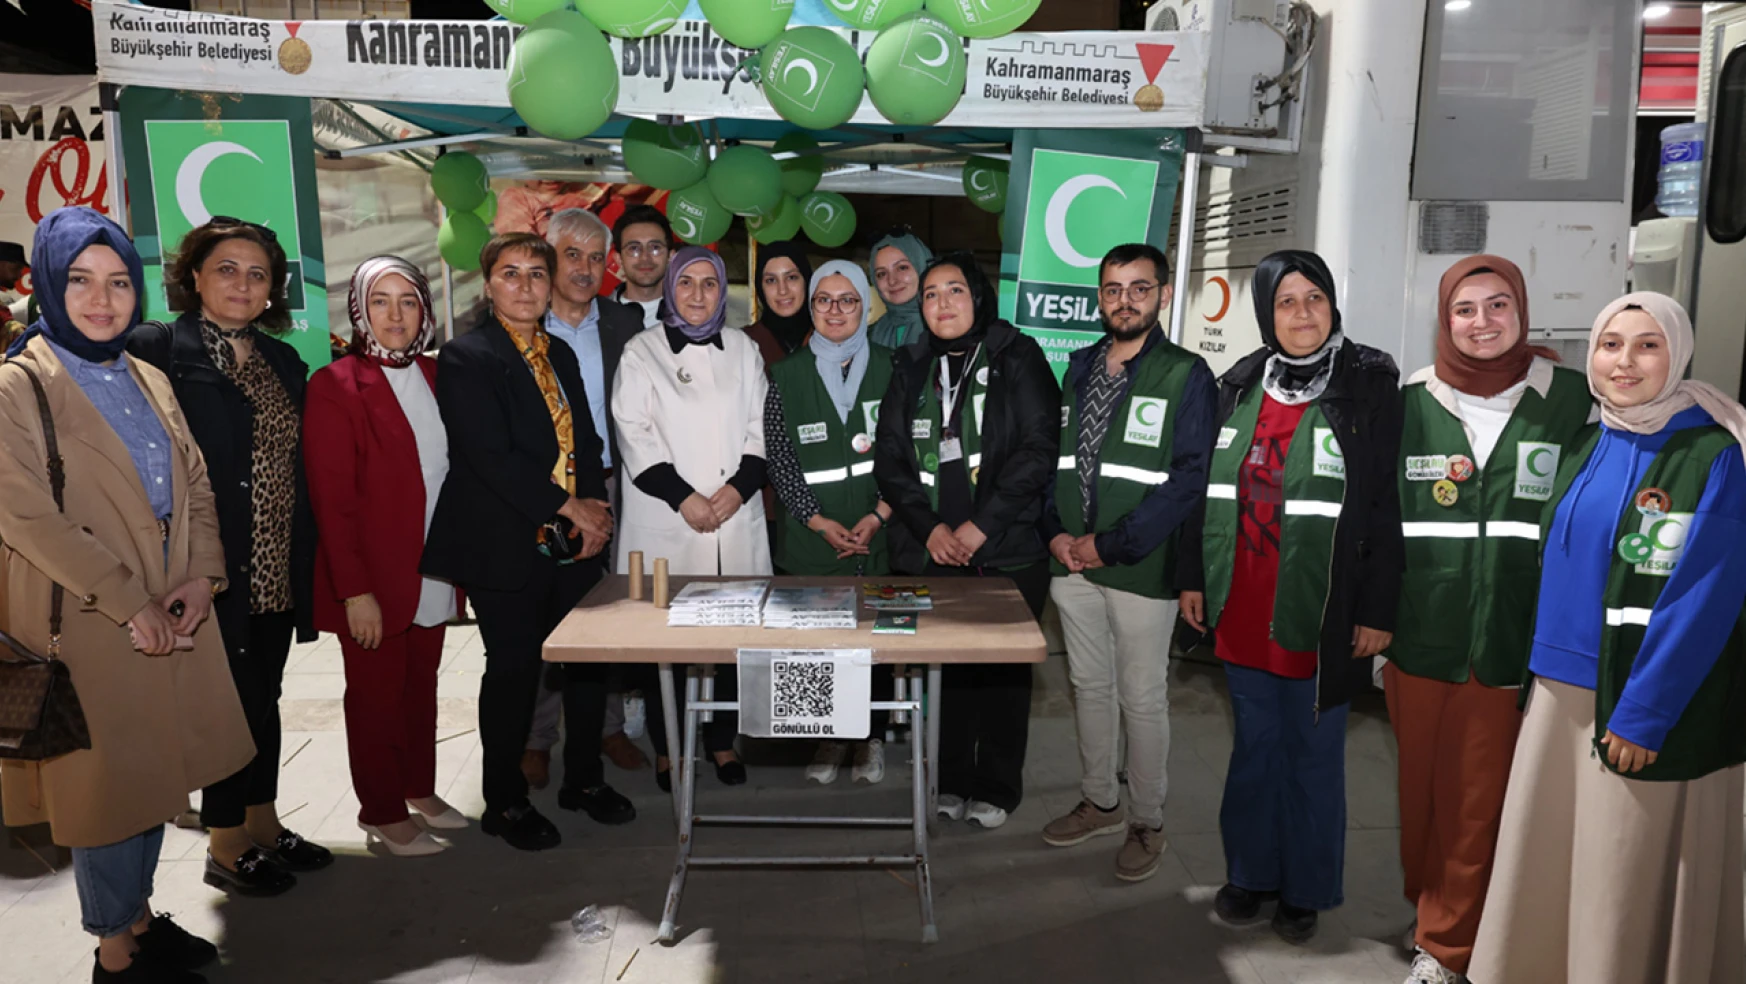 Türk Kızılay, Kahramanmaraş'ta 'Bu ramazan sensiz olmaz' dedi